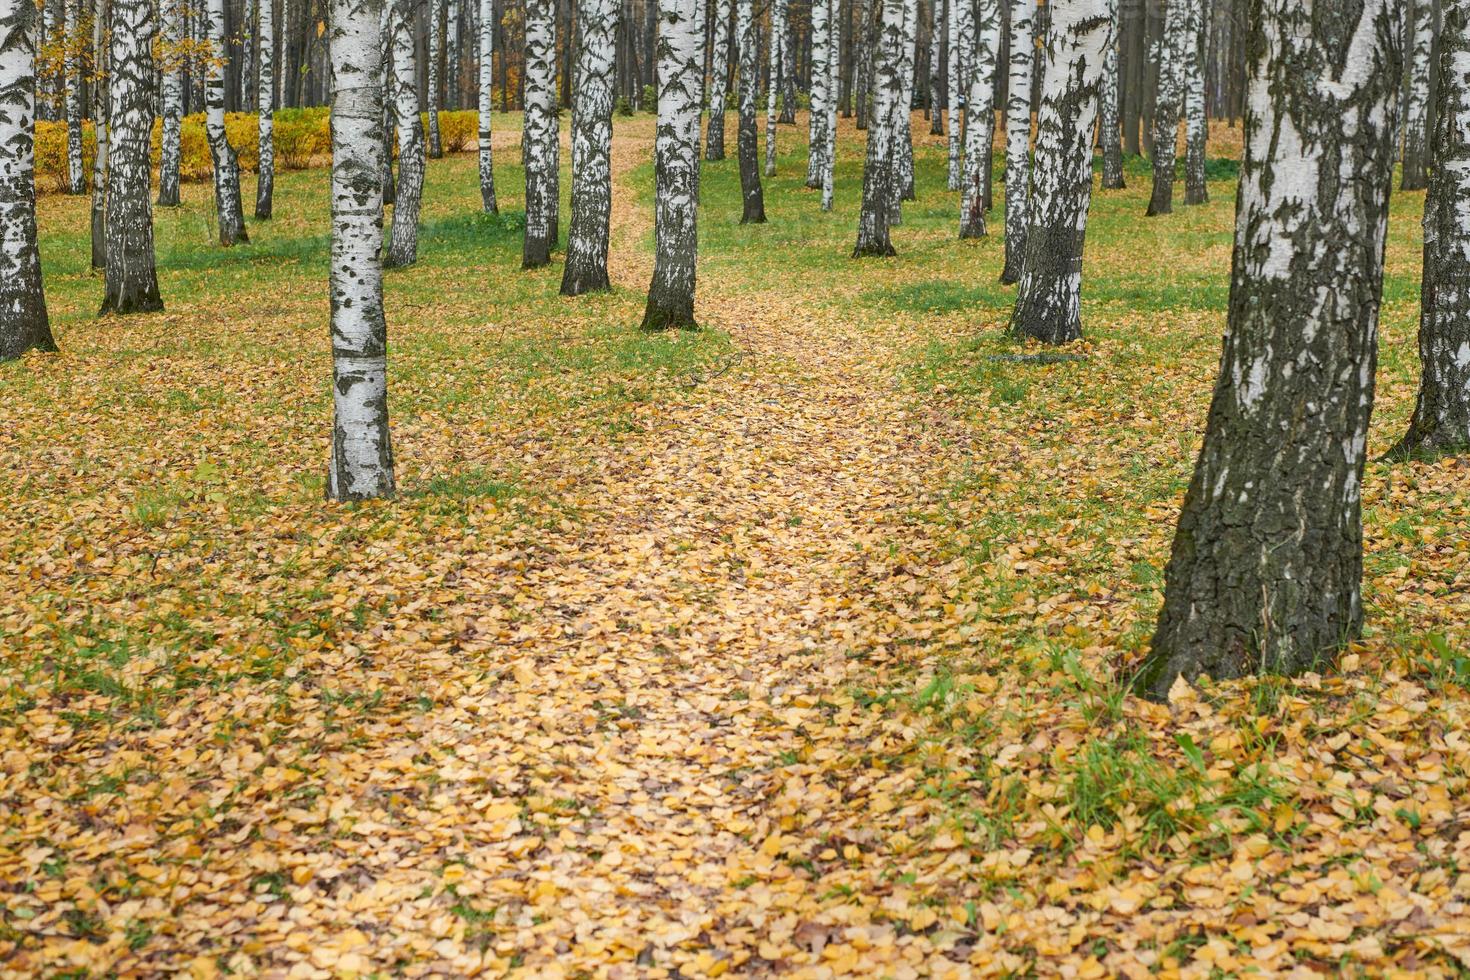 trilha da floresta de outono foto